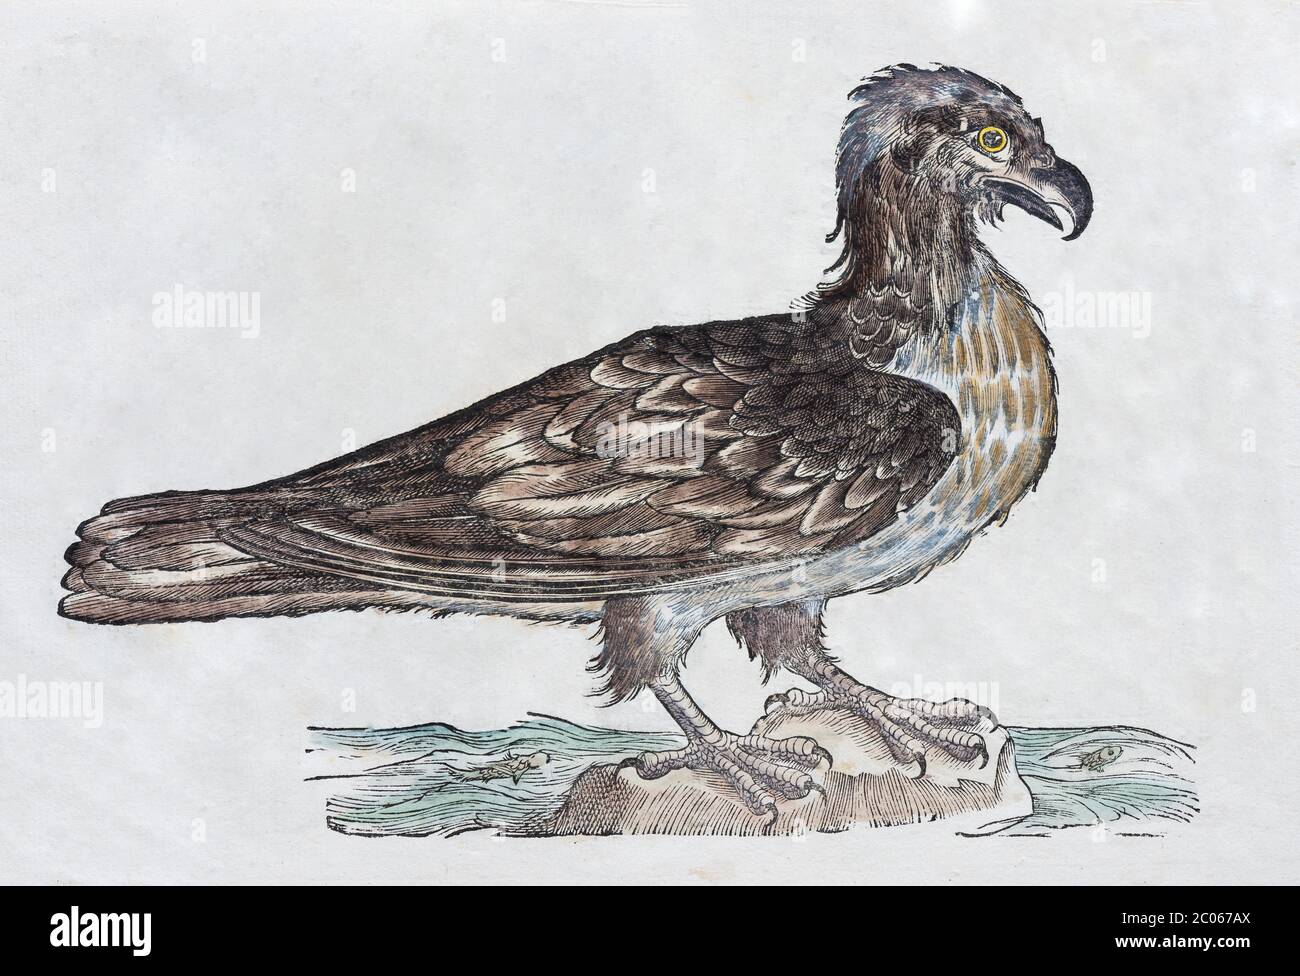 Águila de cola blanca (Haliaeetus), ilustración de madera de color a mano: Ornithologiae hoc est de avibus Historiae Libri XII de Ulises Aldrovandi Foto de stock